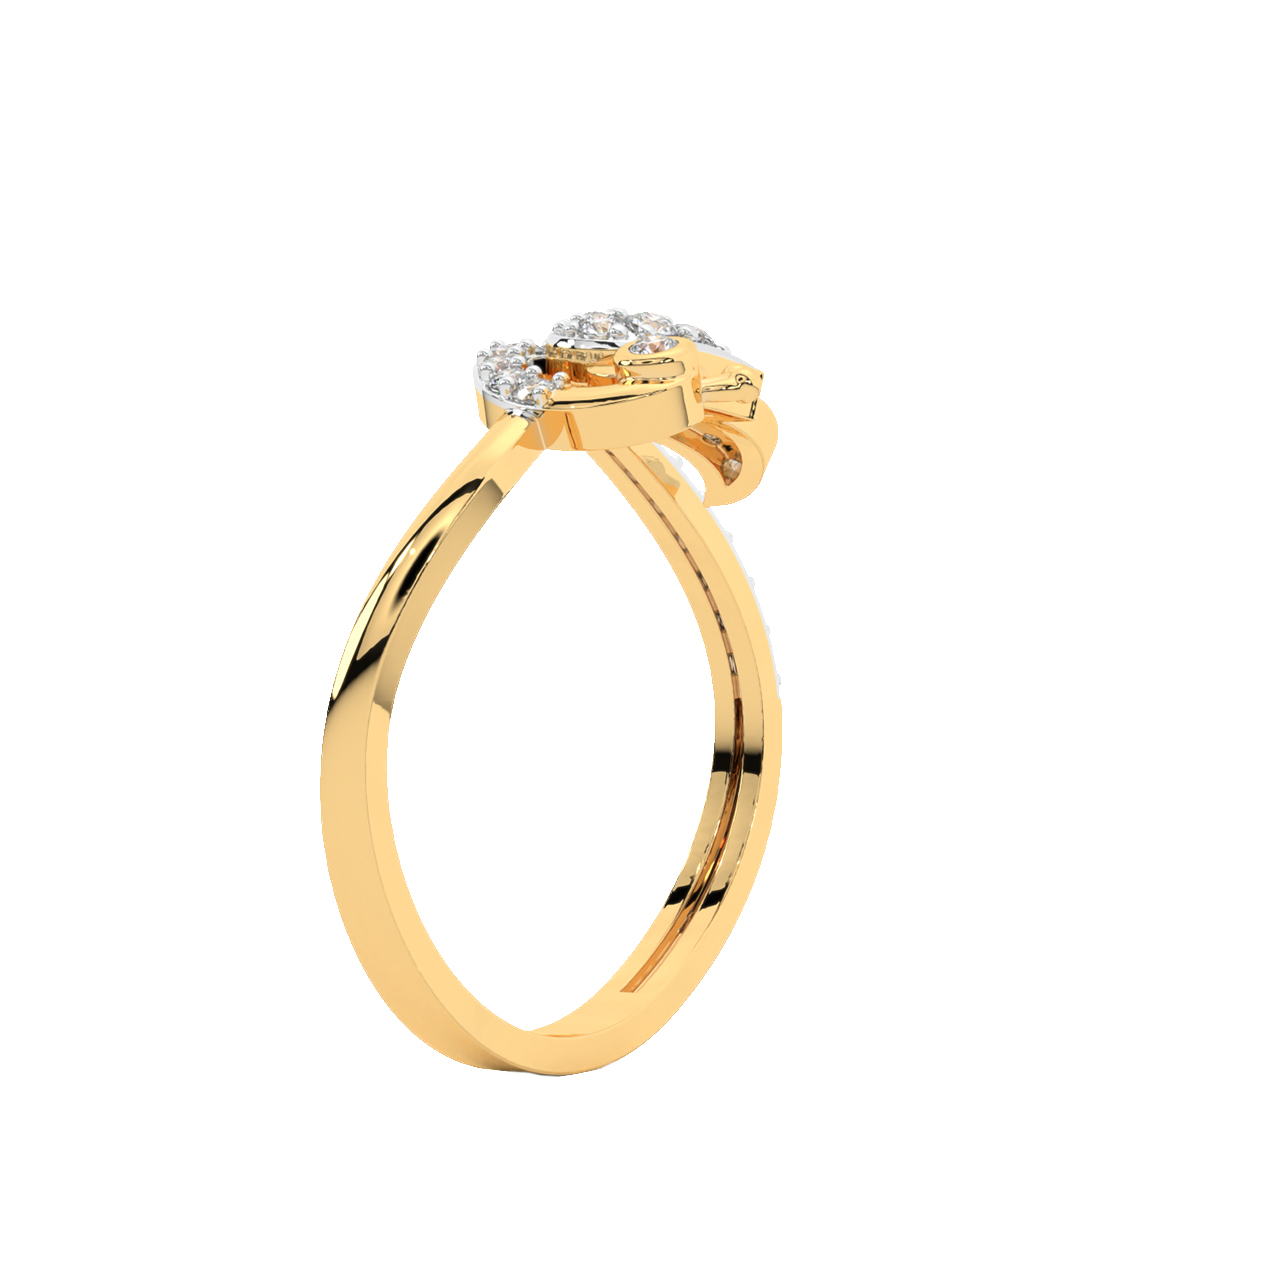 Anthony Diamond Engagement Ring